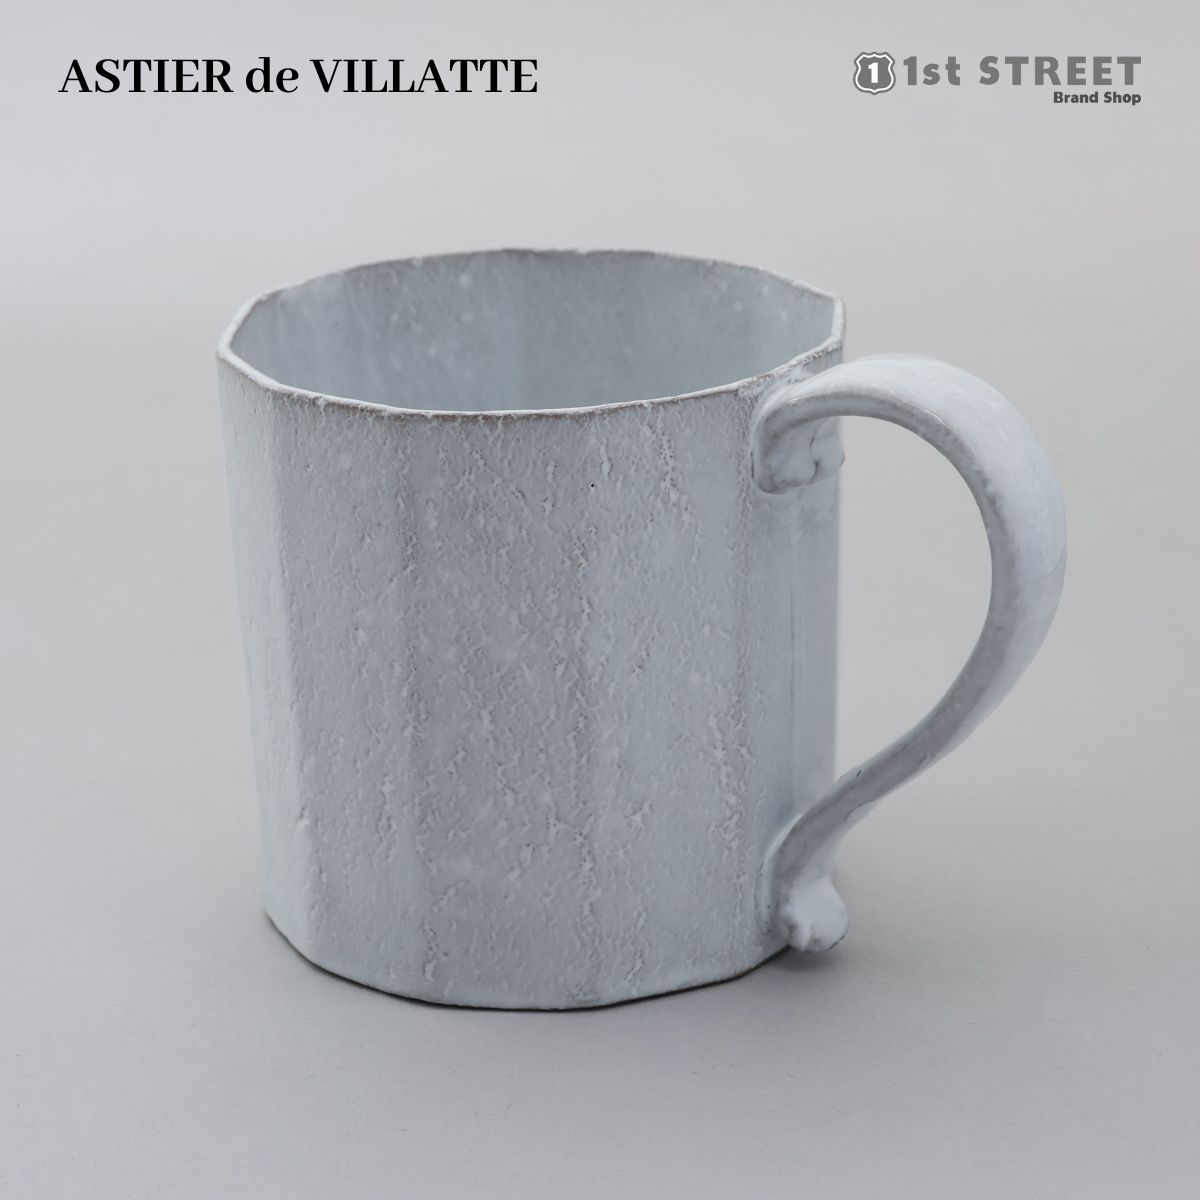 アスティエ・ド・ヴィラット ASTIER de VILLATTE マグカップ コップ 